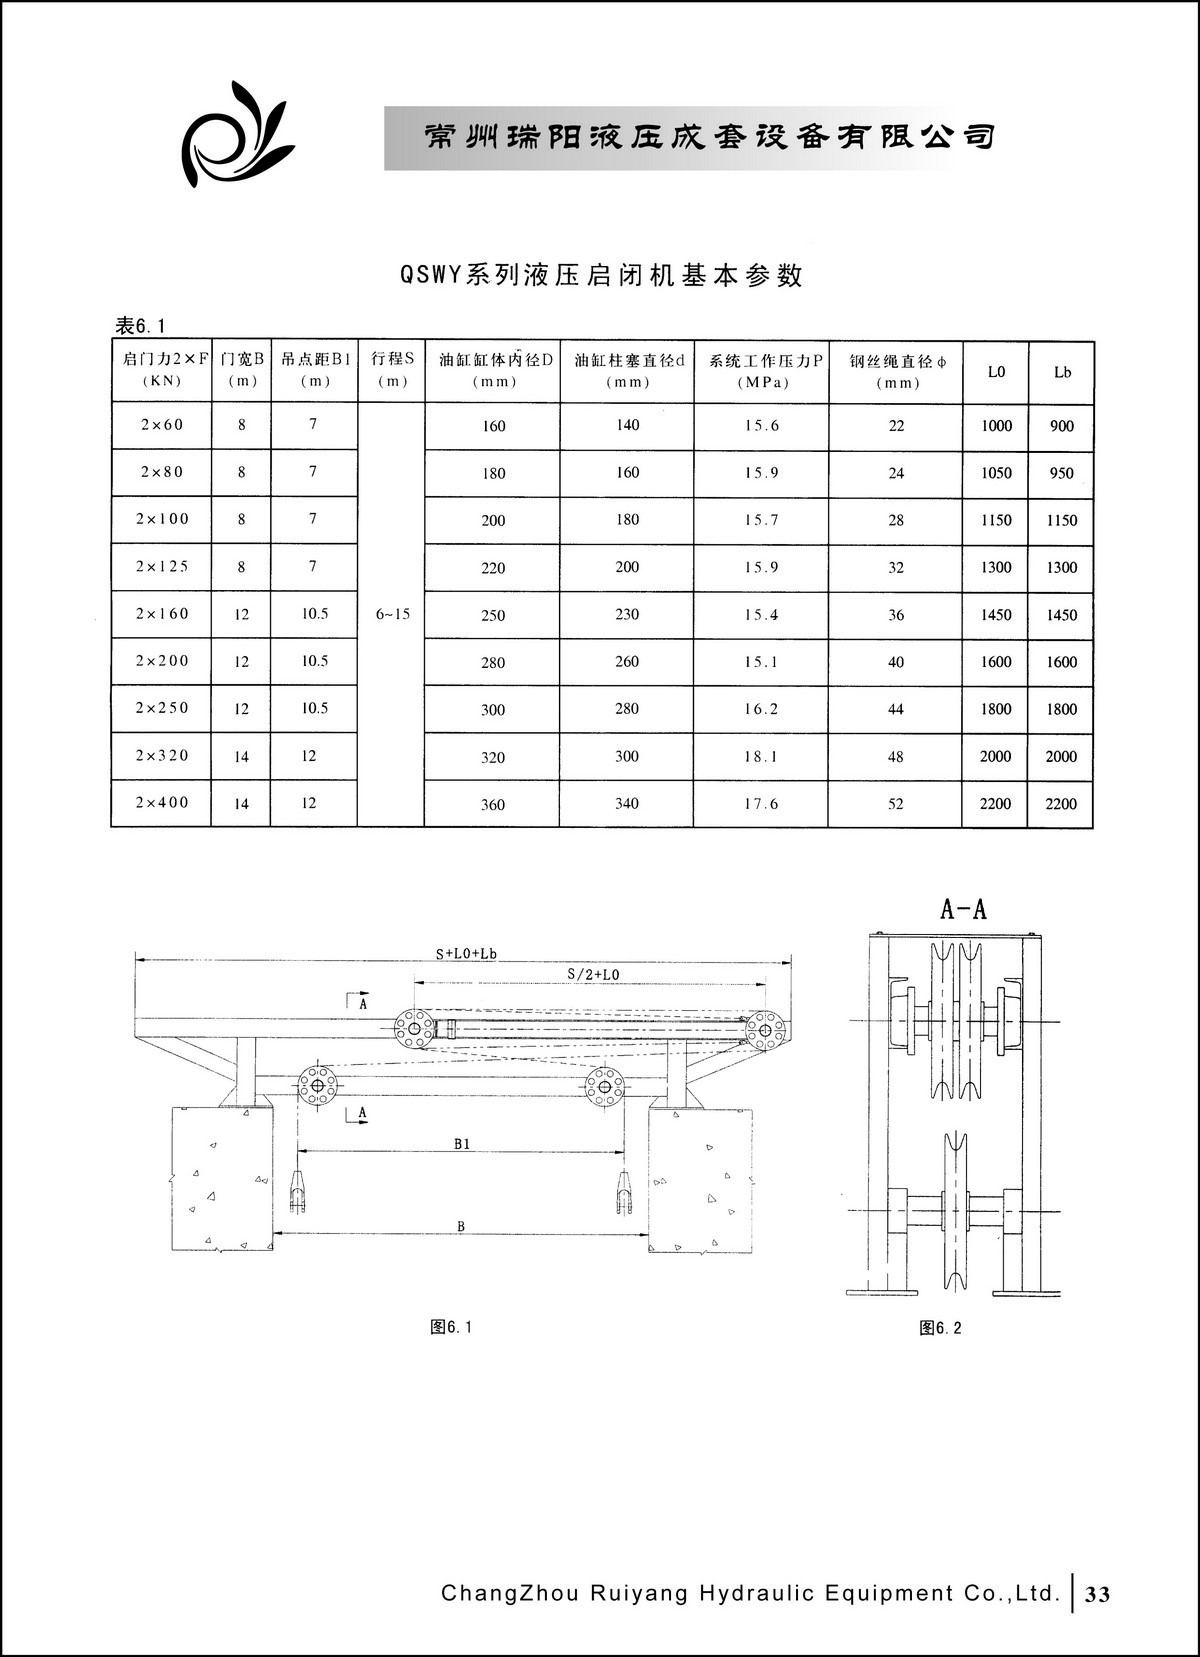 常州瑞阳液压成套设备有限公司产品样本2_页面_33.JPG